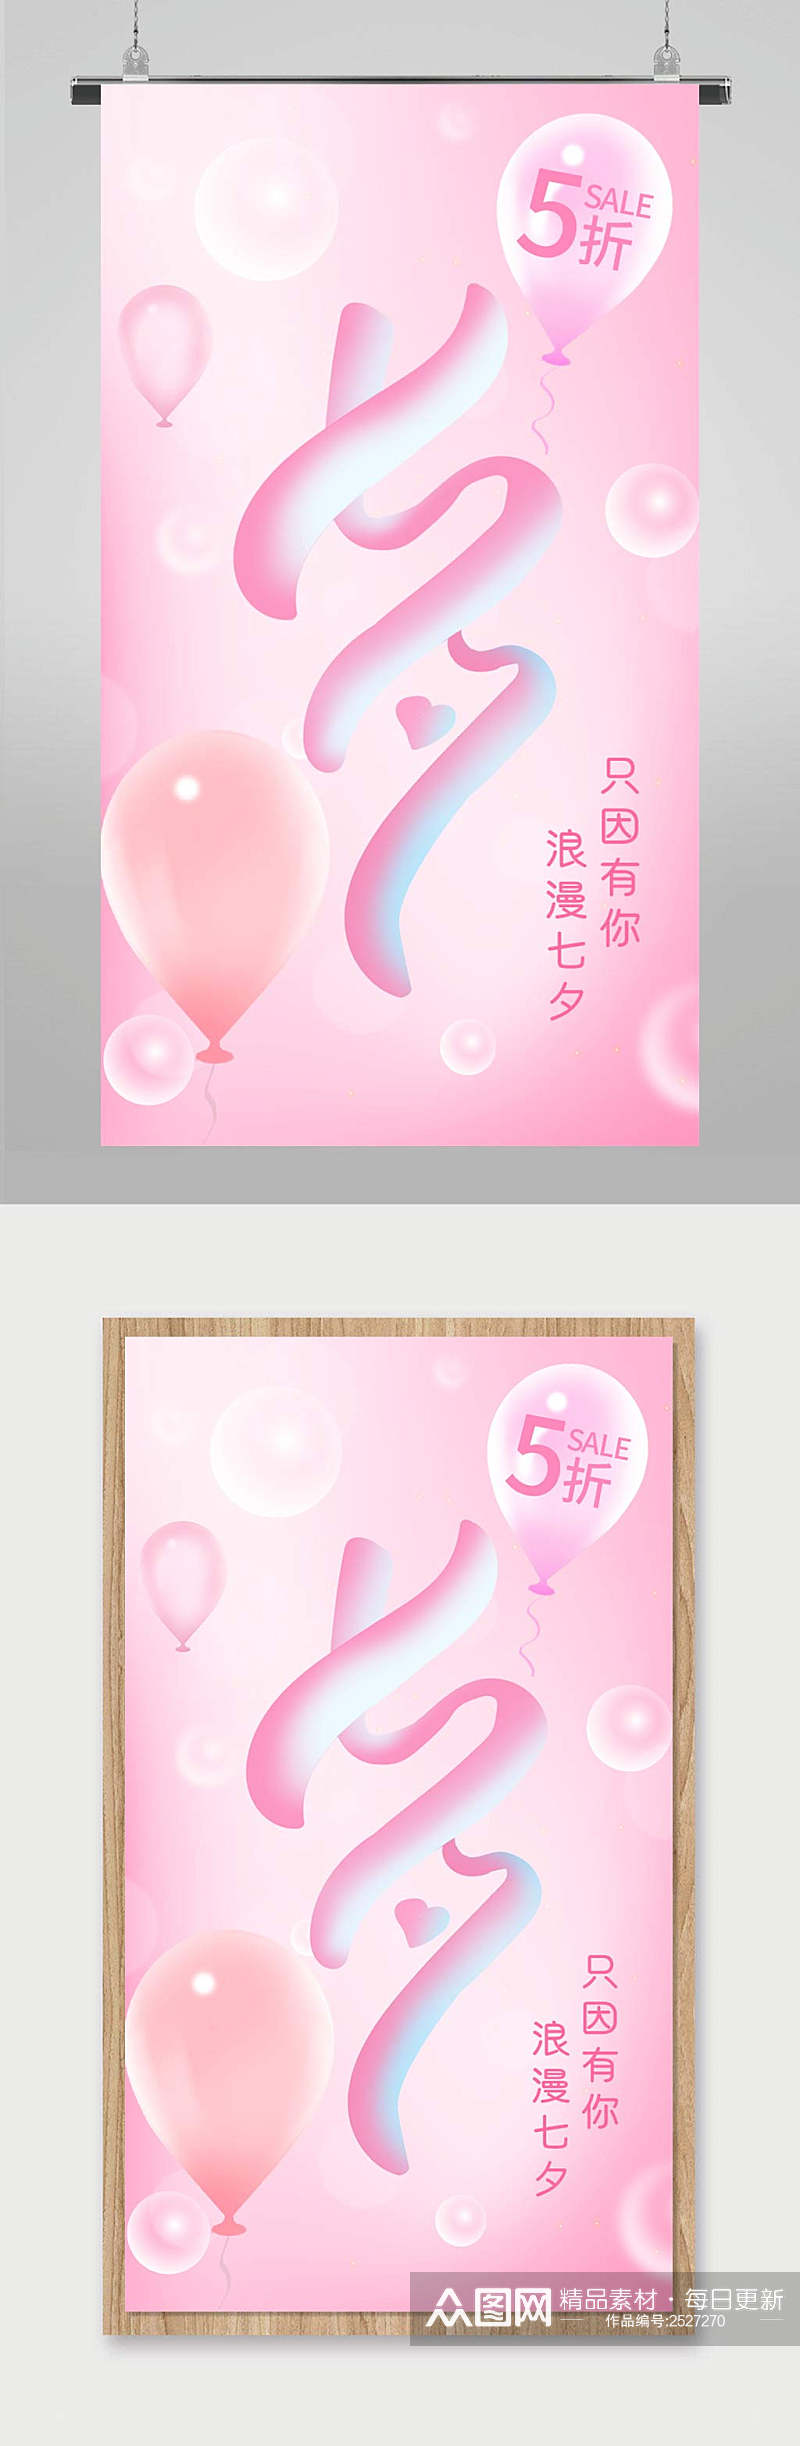 七夕情人节商场促销宣传海报素材